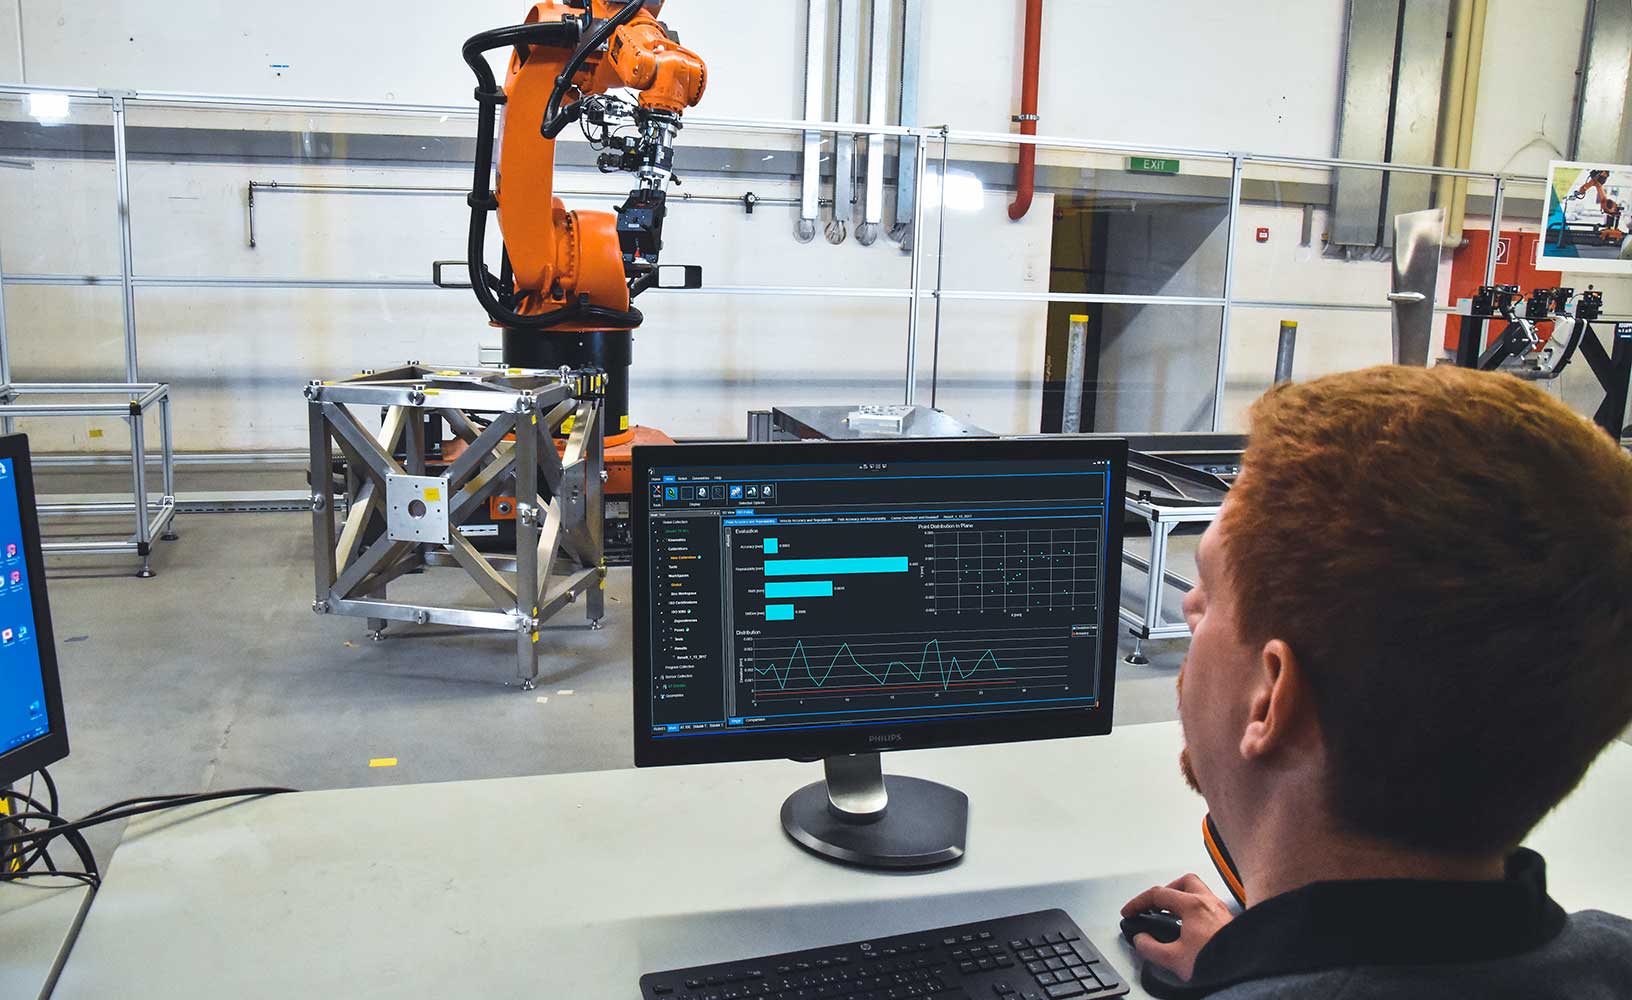 Robô industrial sendo calibrado pelo operador através do software.